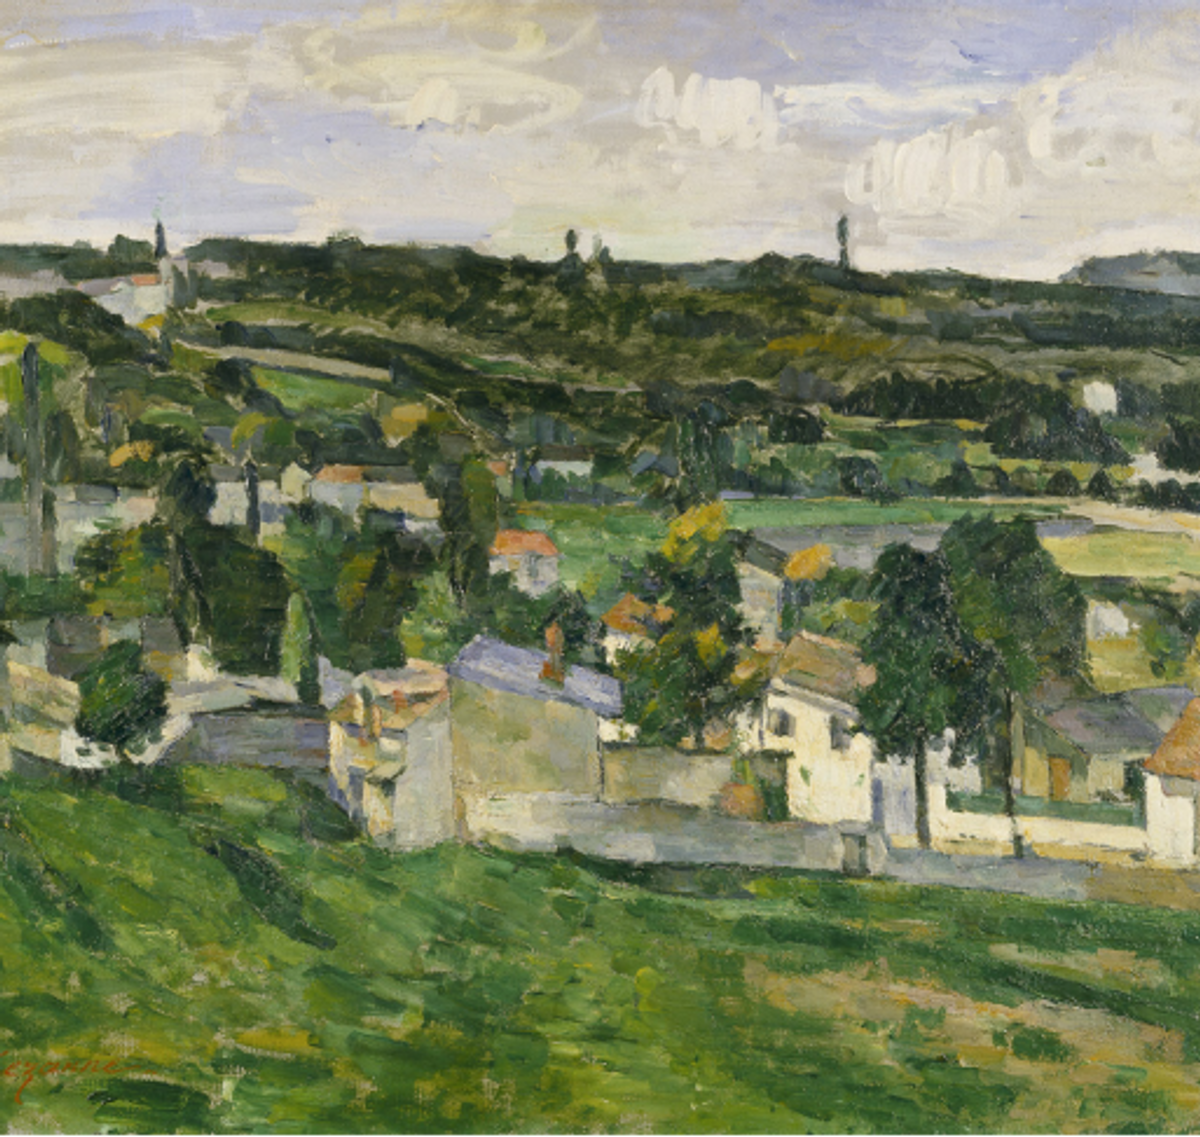 Paul Cézanne, Vue d’Auvers-sur-Oise, 1879-1880, huile sur toile, 46×55 cm. Coll. Ashmolean Museum, Oxford. Volé le 31 décembre 1999 D.R.